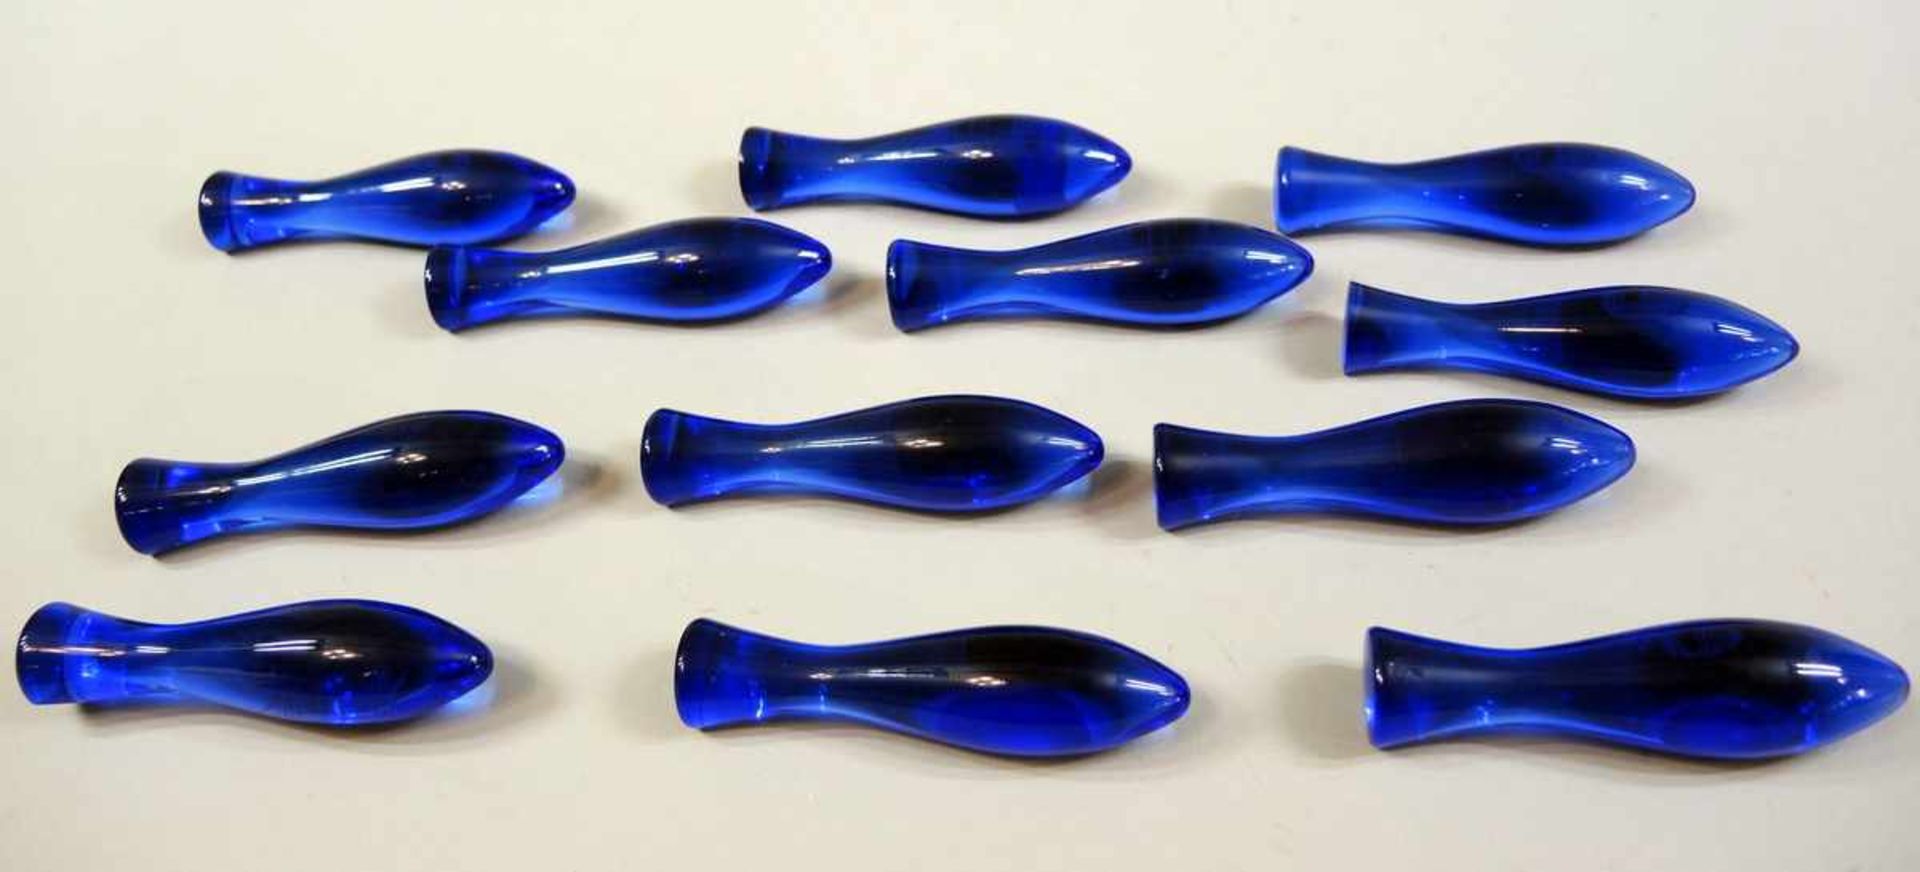 12 Messerbänkchen Kobaltblaues Glas, einzeln "Daniel Hechter" signiert. Glatte Wandung und